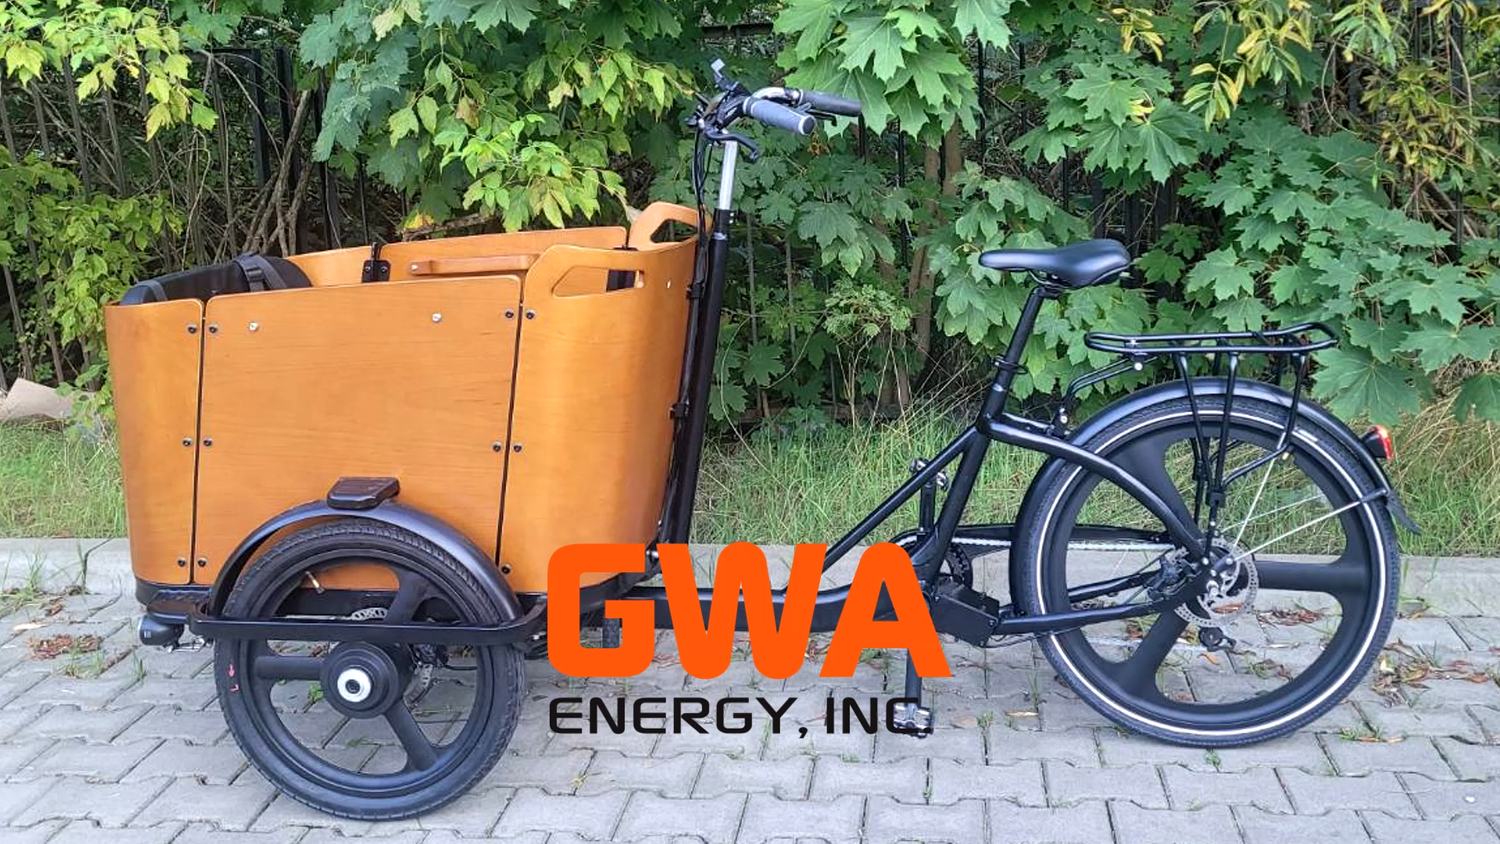 GWA Energy, Inc